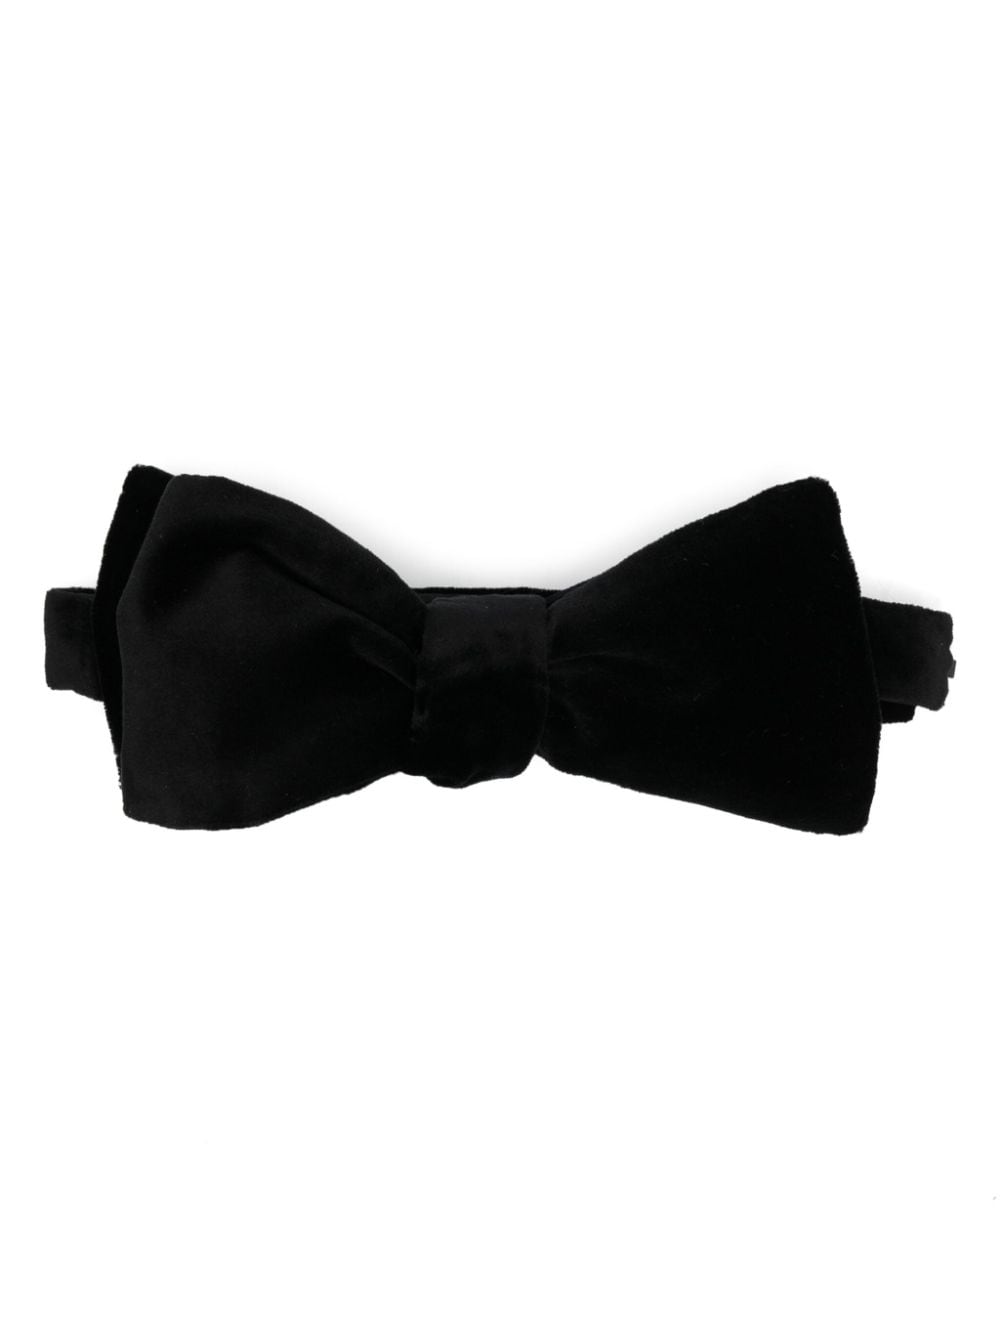 Paul Smith adjustable velvet bow tie - Black von Paul Smith